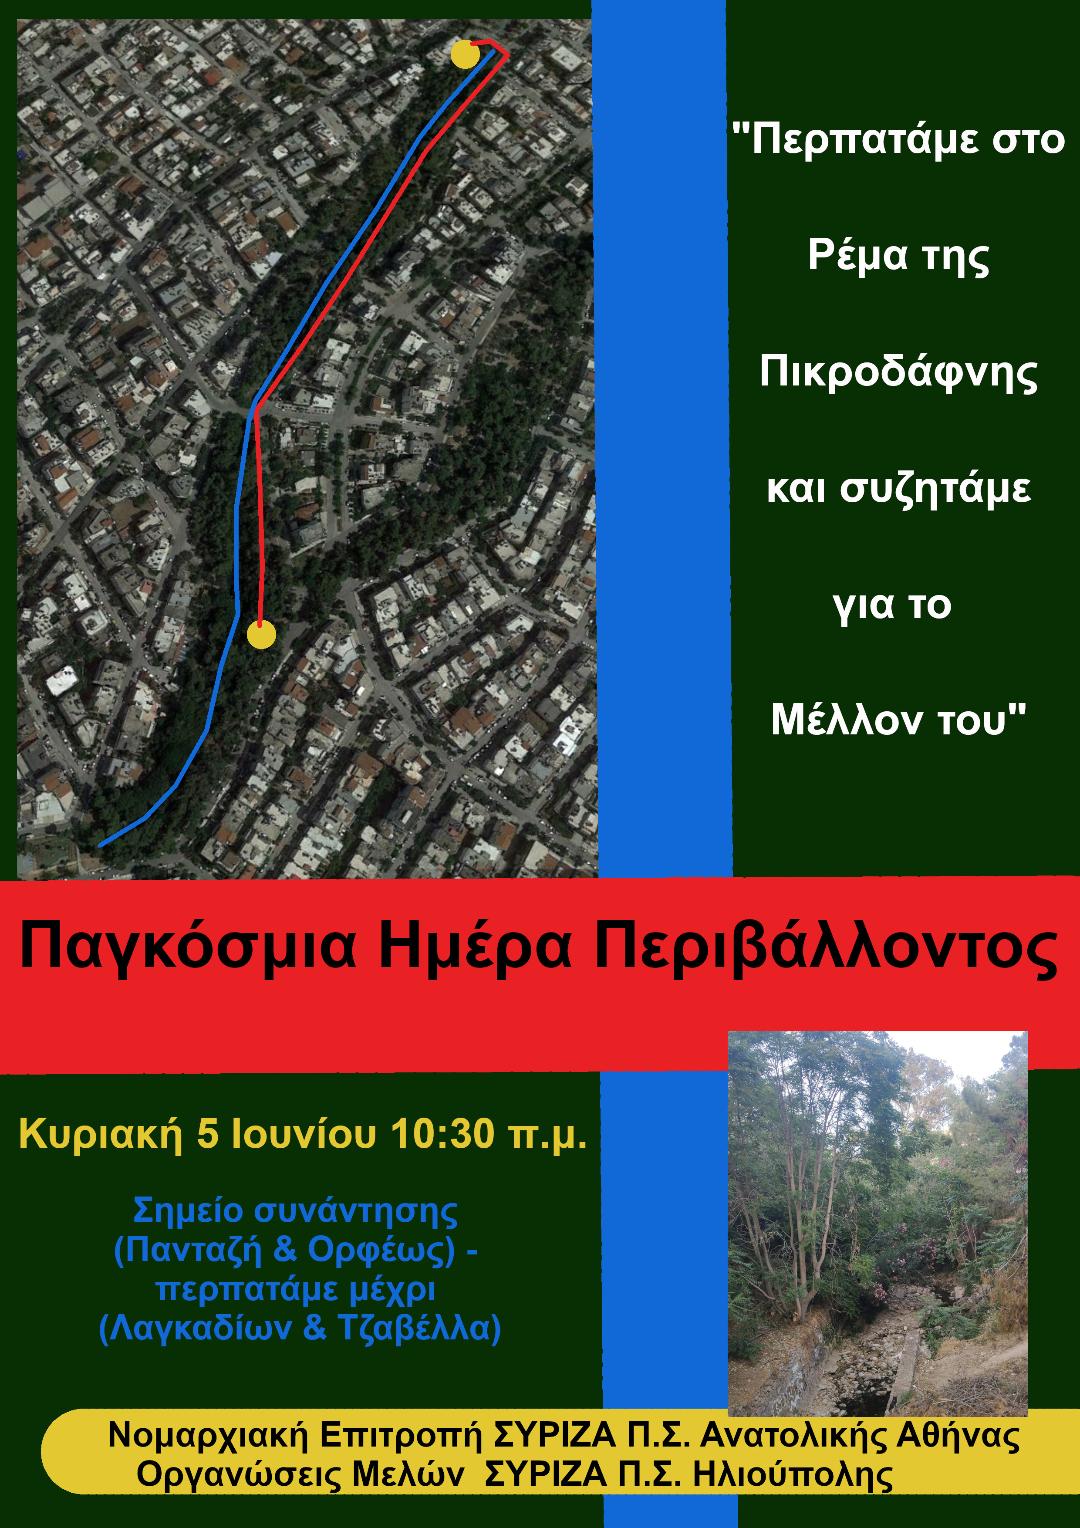 ΣΥΡΙΖΑ-ΠΣ Ανατολικής Αθήνας-ΣΥΡΙΖΑ-ΠΣ Ηλιούπολης: Περπατάμε στο Ρέμα της Πικροδάφνης και συζητάμε για το Μέλλον του